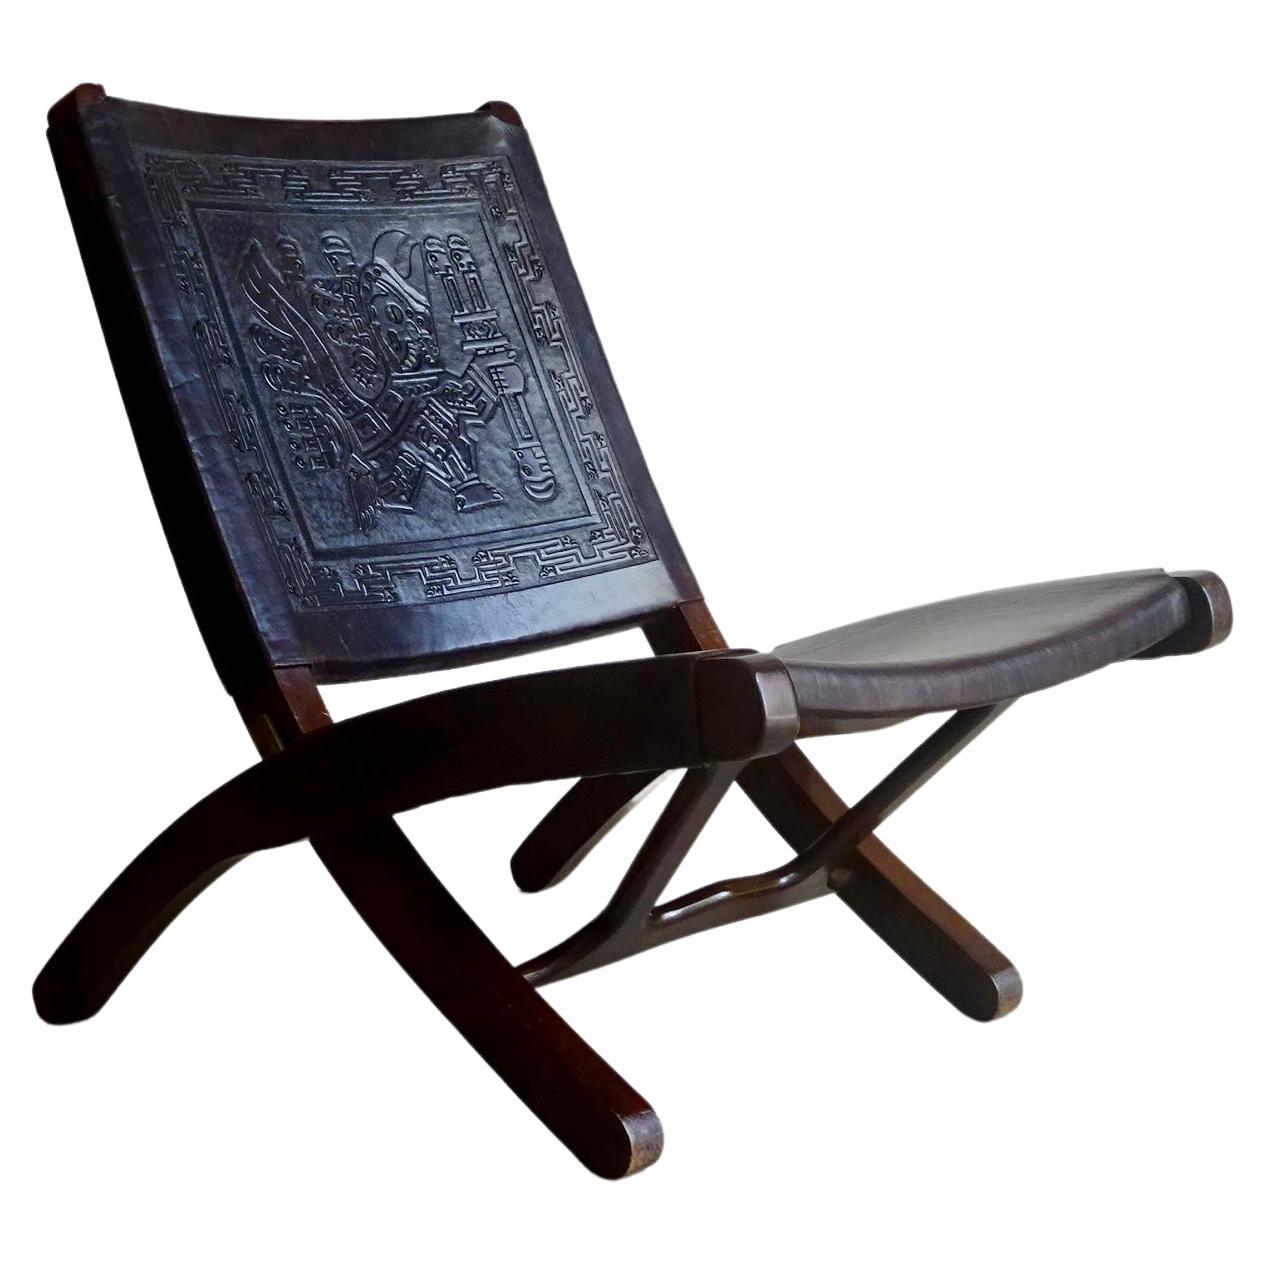 Chaise pliante Ángel Pazmiño, produite par "Muebles De Estilo", Ecuador, années 1960